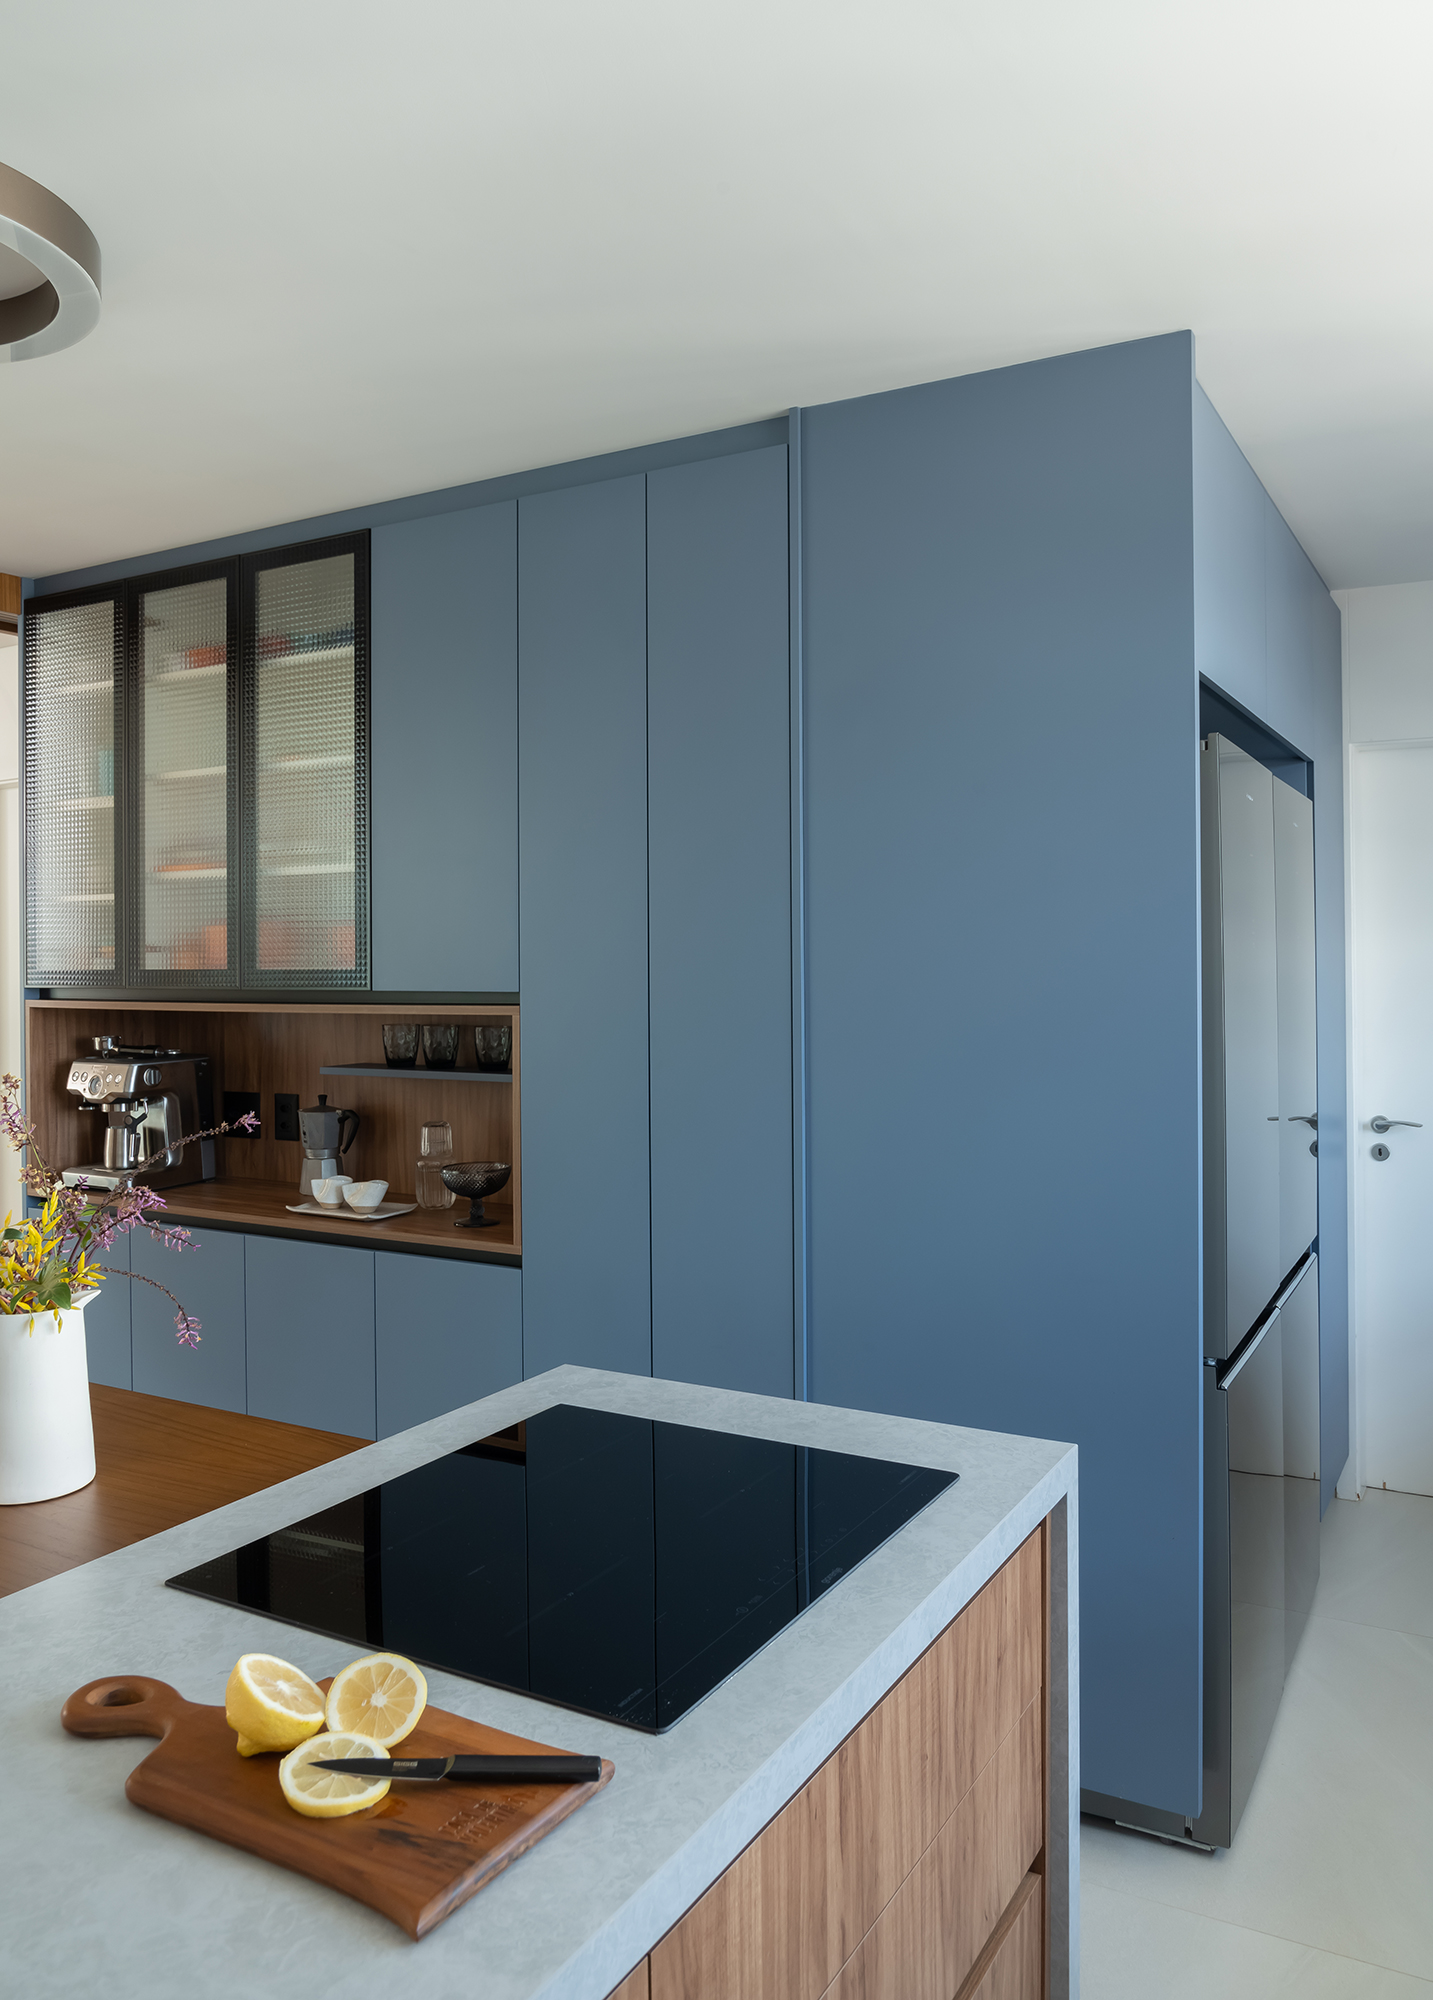 Apartamento de 188 m² ganha dois cooktops na cozinha e balanços na sala, Projeto Raízes Arquitetos. Na foto, cozinha com marcenaria azul e ilha. Cooktop e nicho para café.